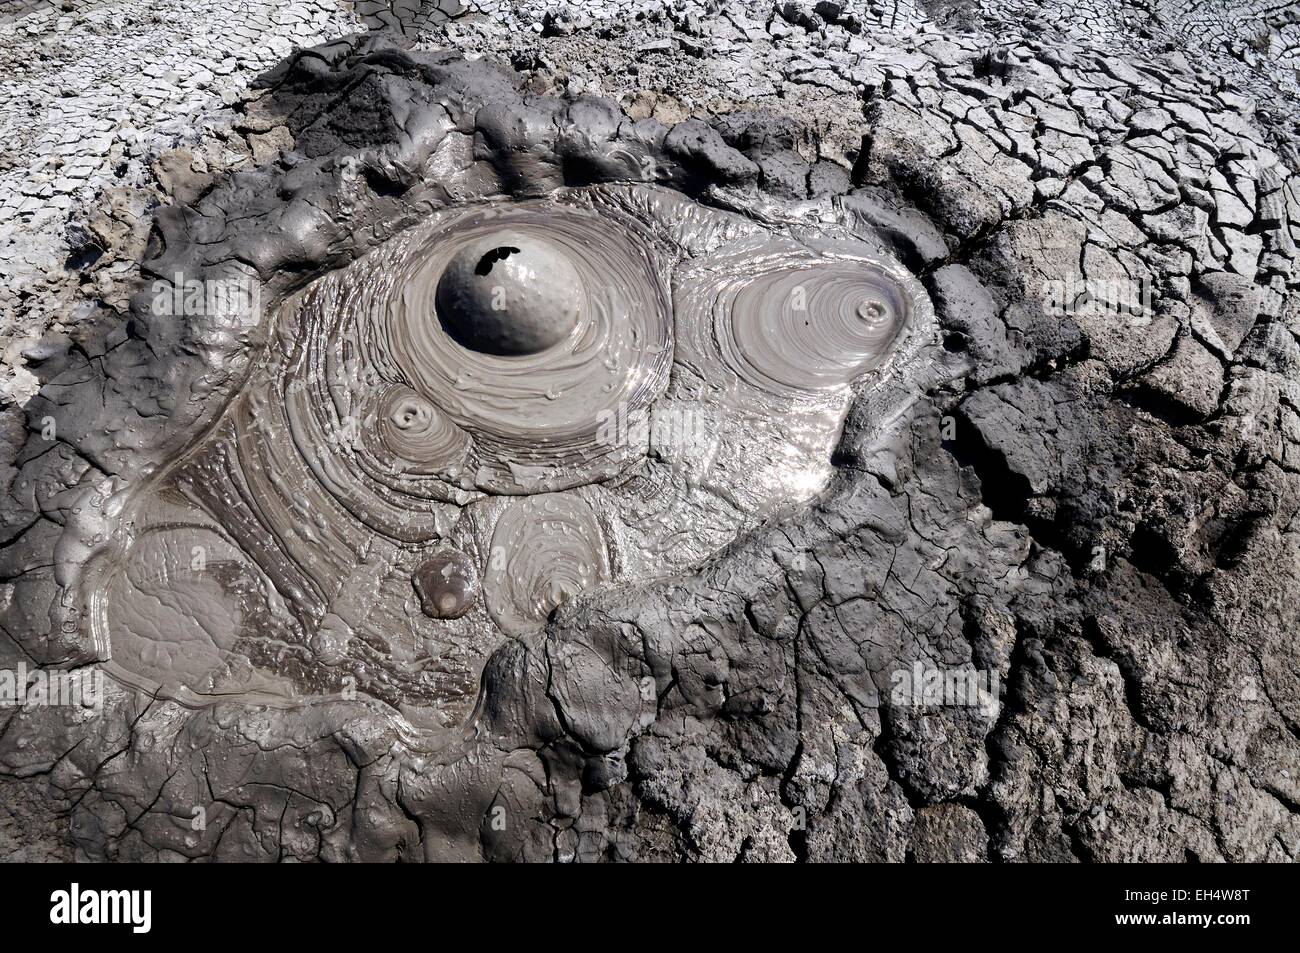 Azerbaijan, Qobustan, bubbling mud volcano Stock Photo